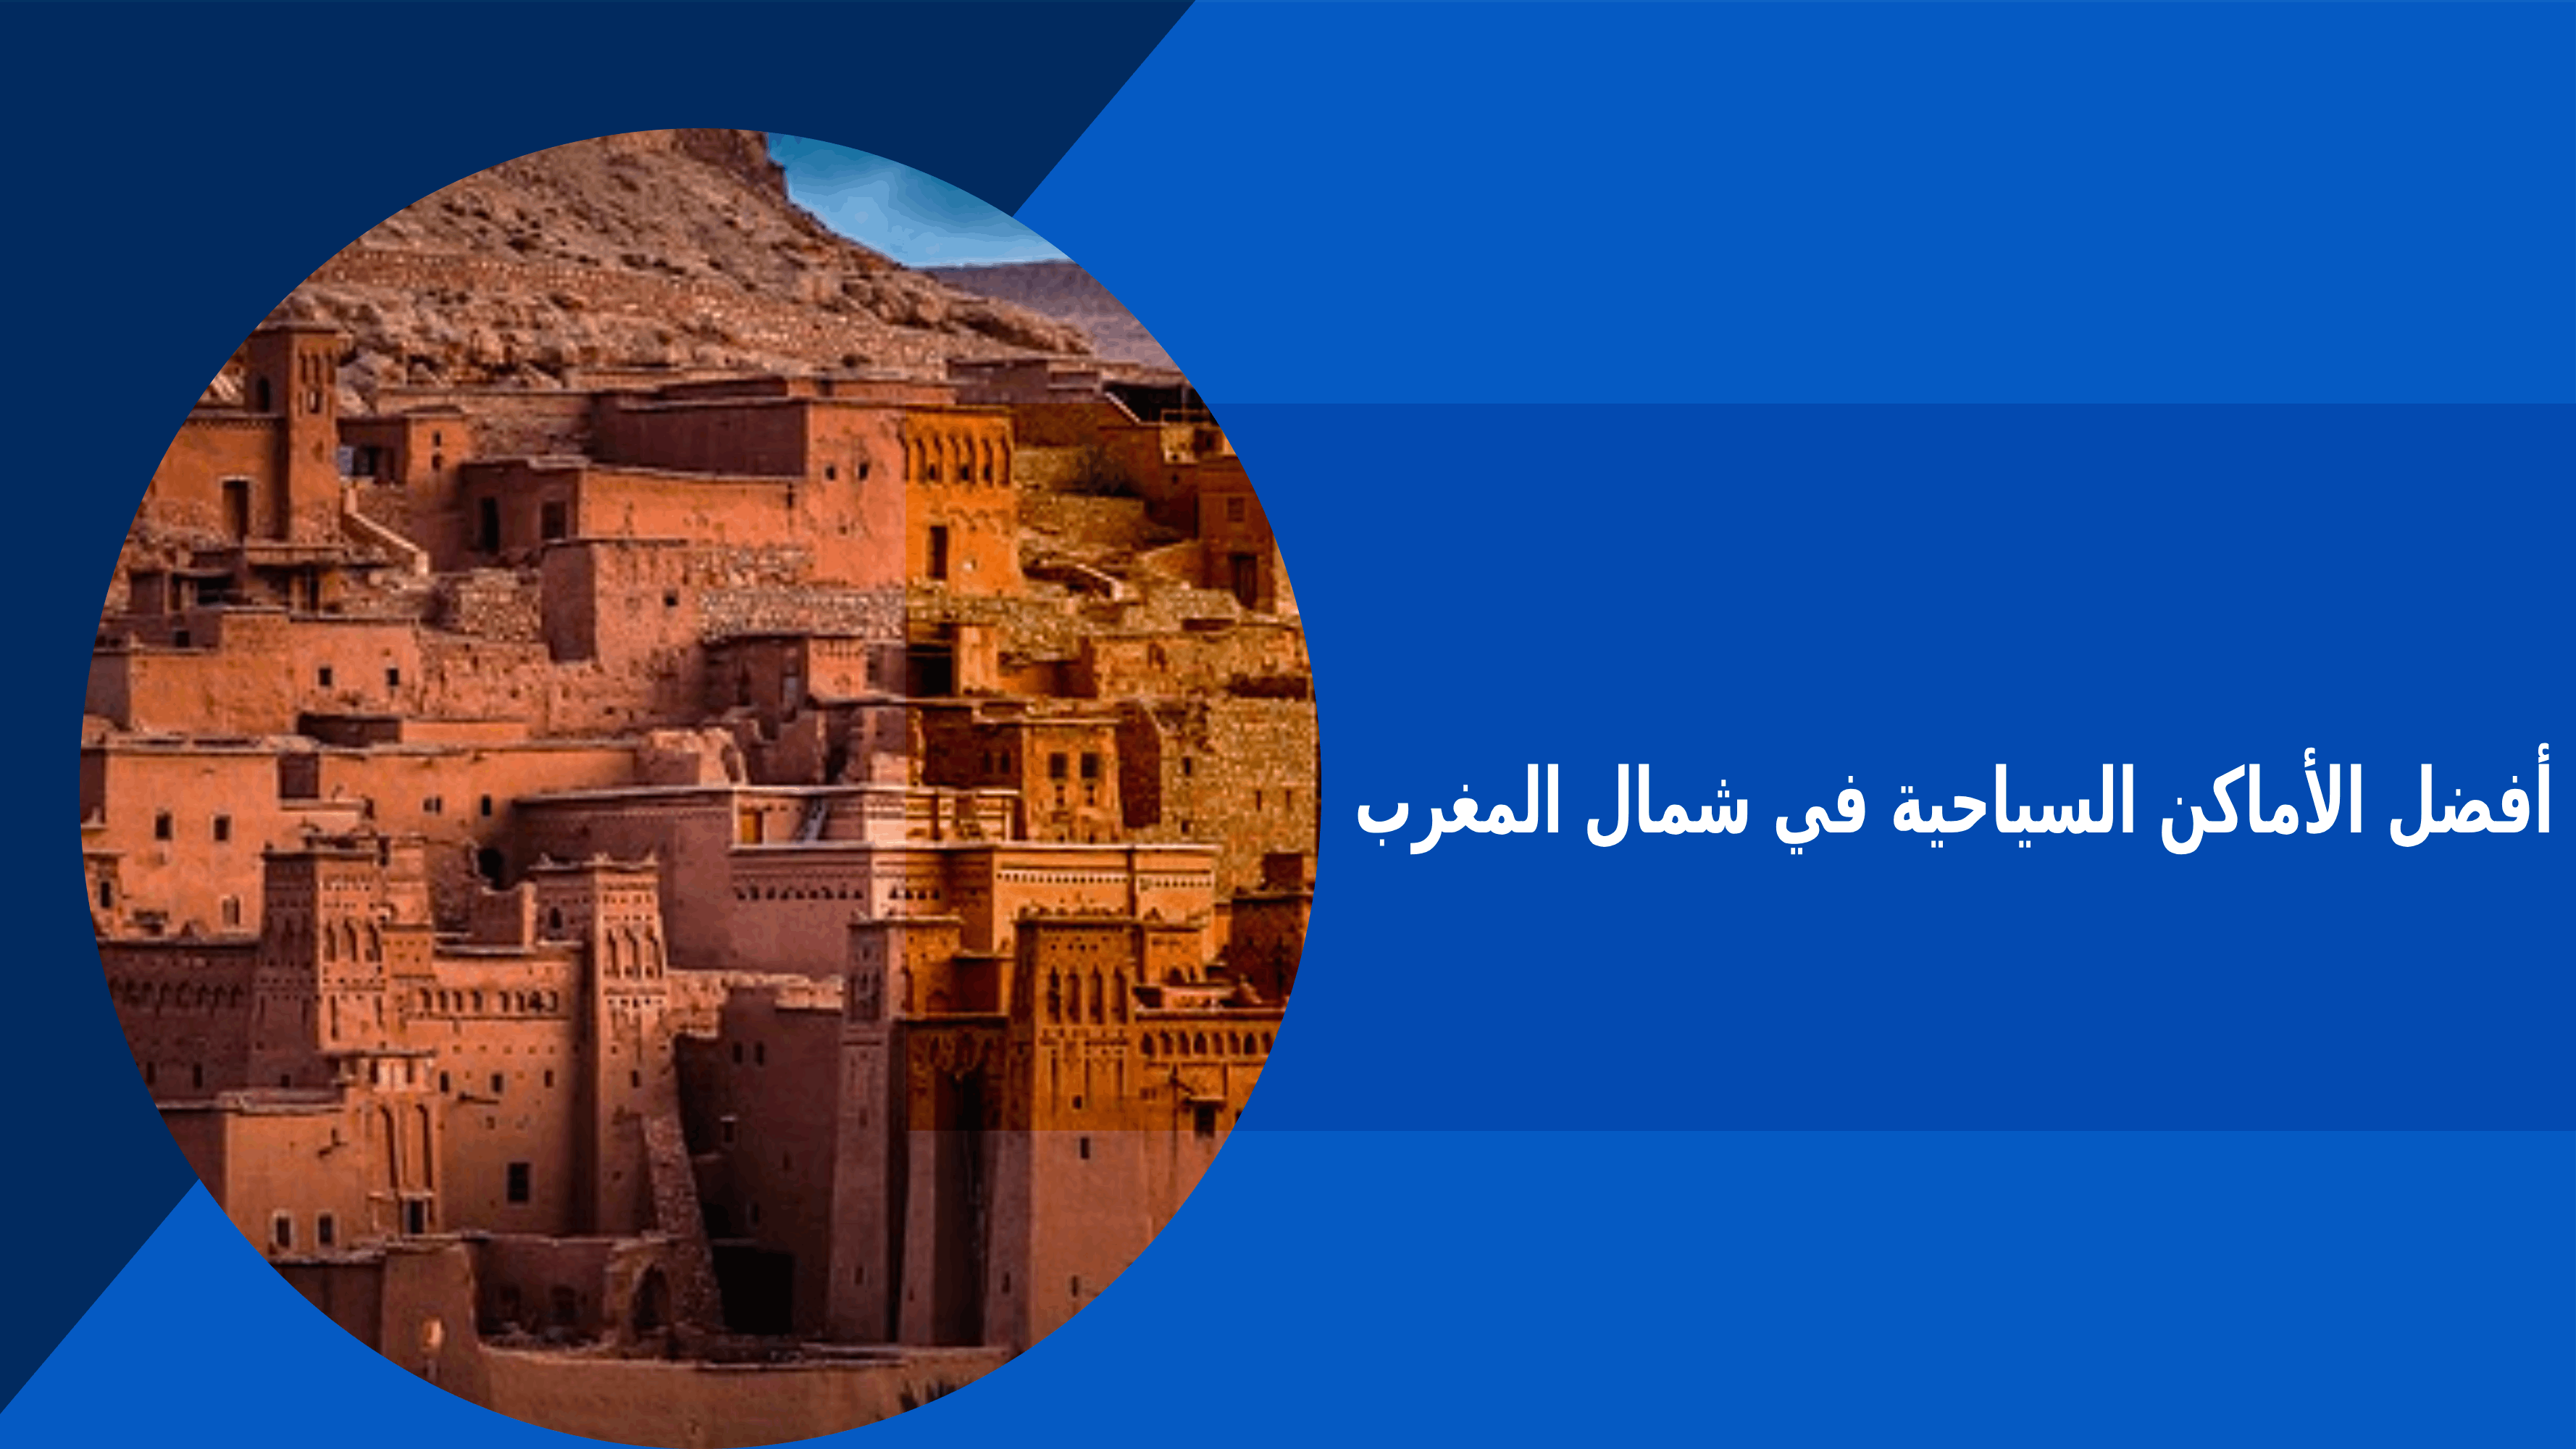 أفضل الأماكن السياحة في المغرب للاستمتاع بطبيعتها